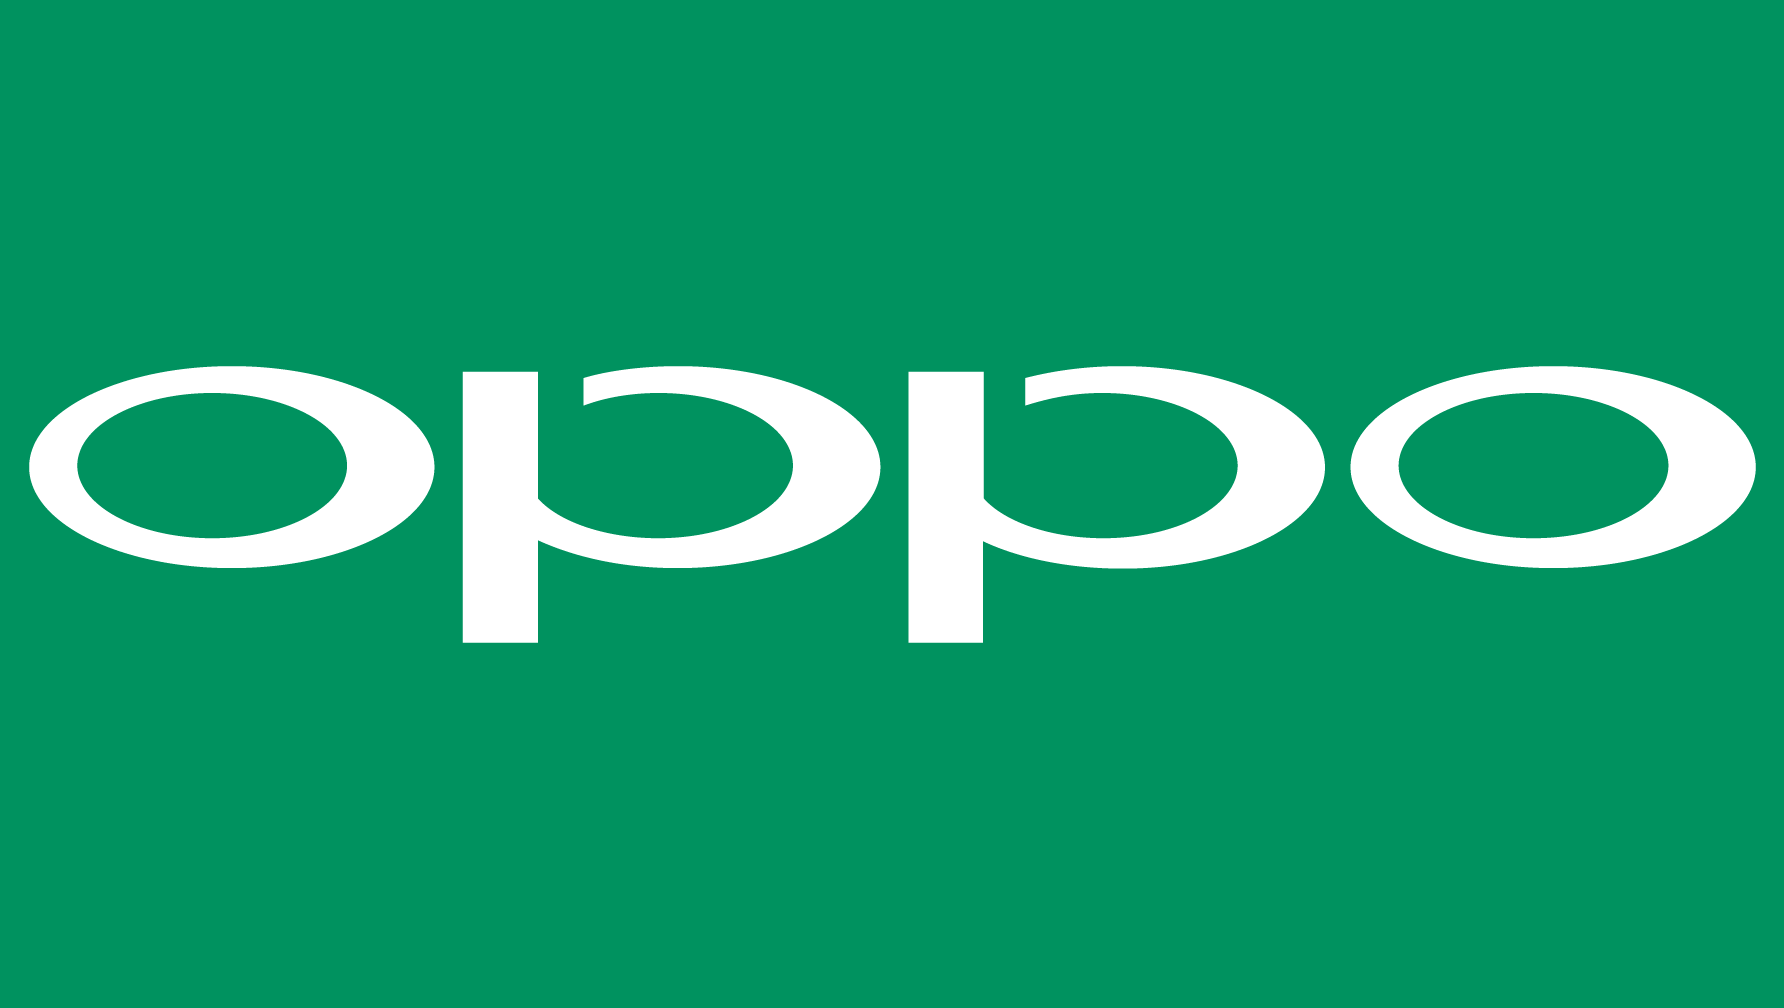 تعلن Oppo عن 3 تقنيات شحن سريع جديدة 89